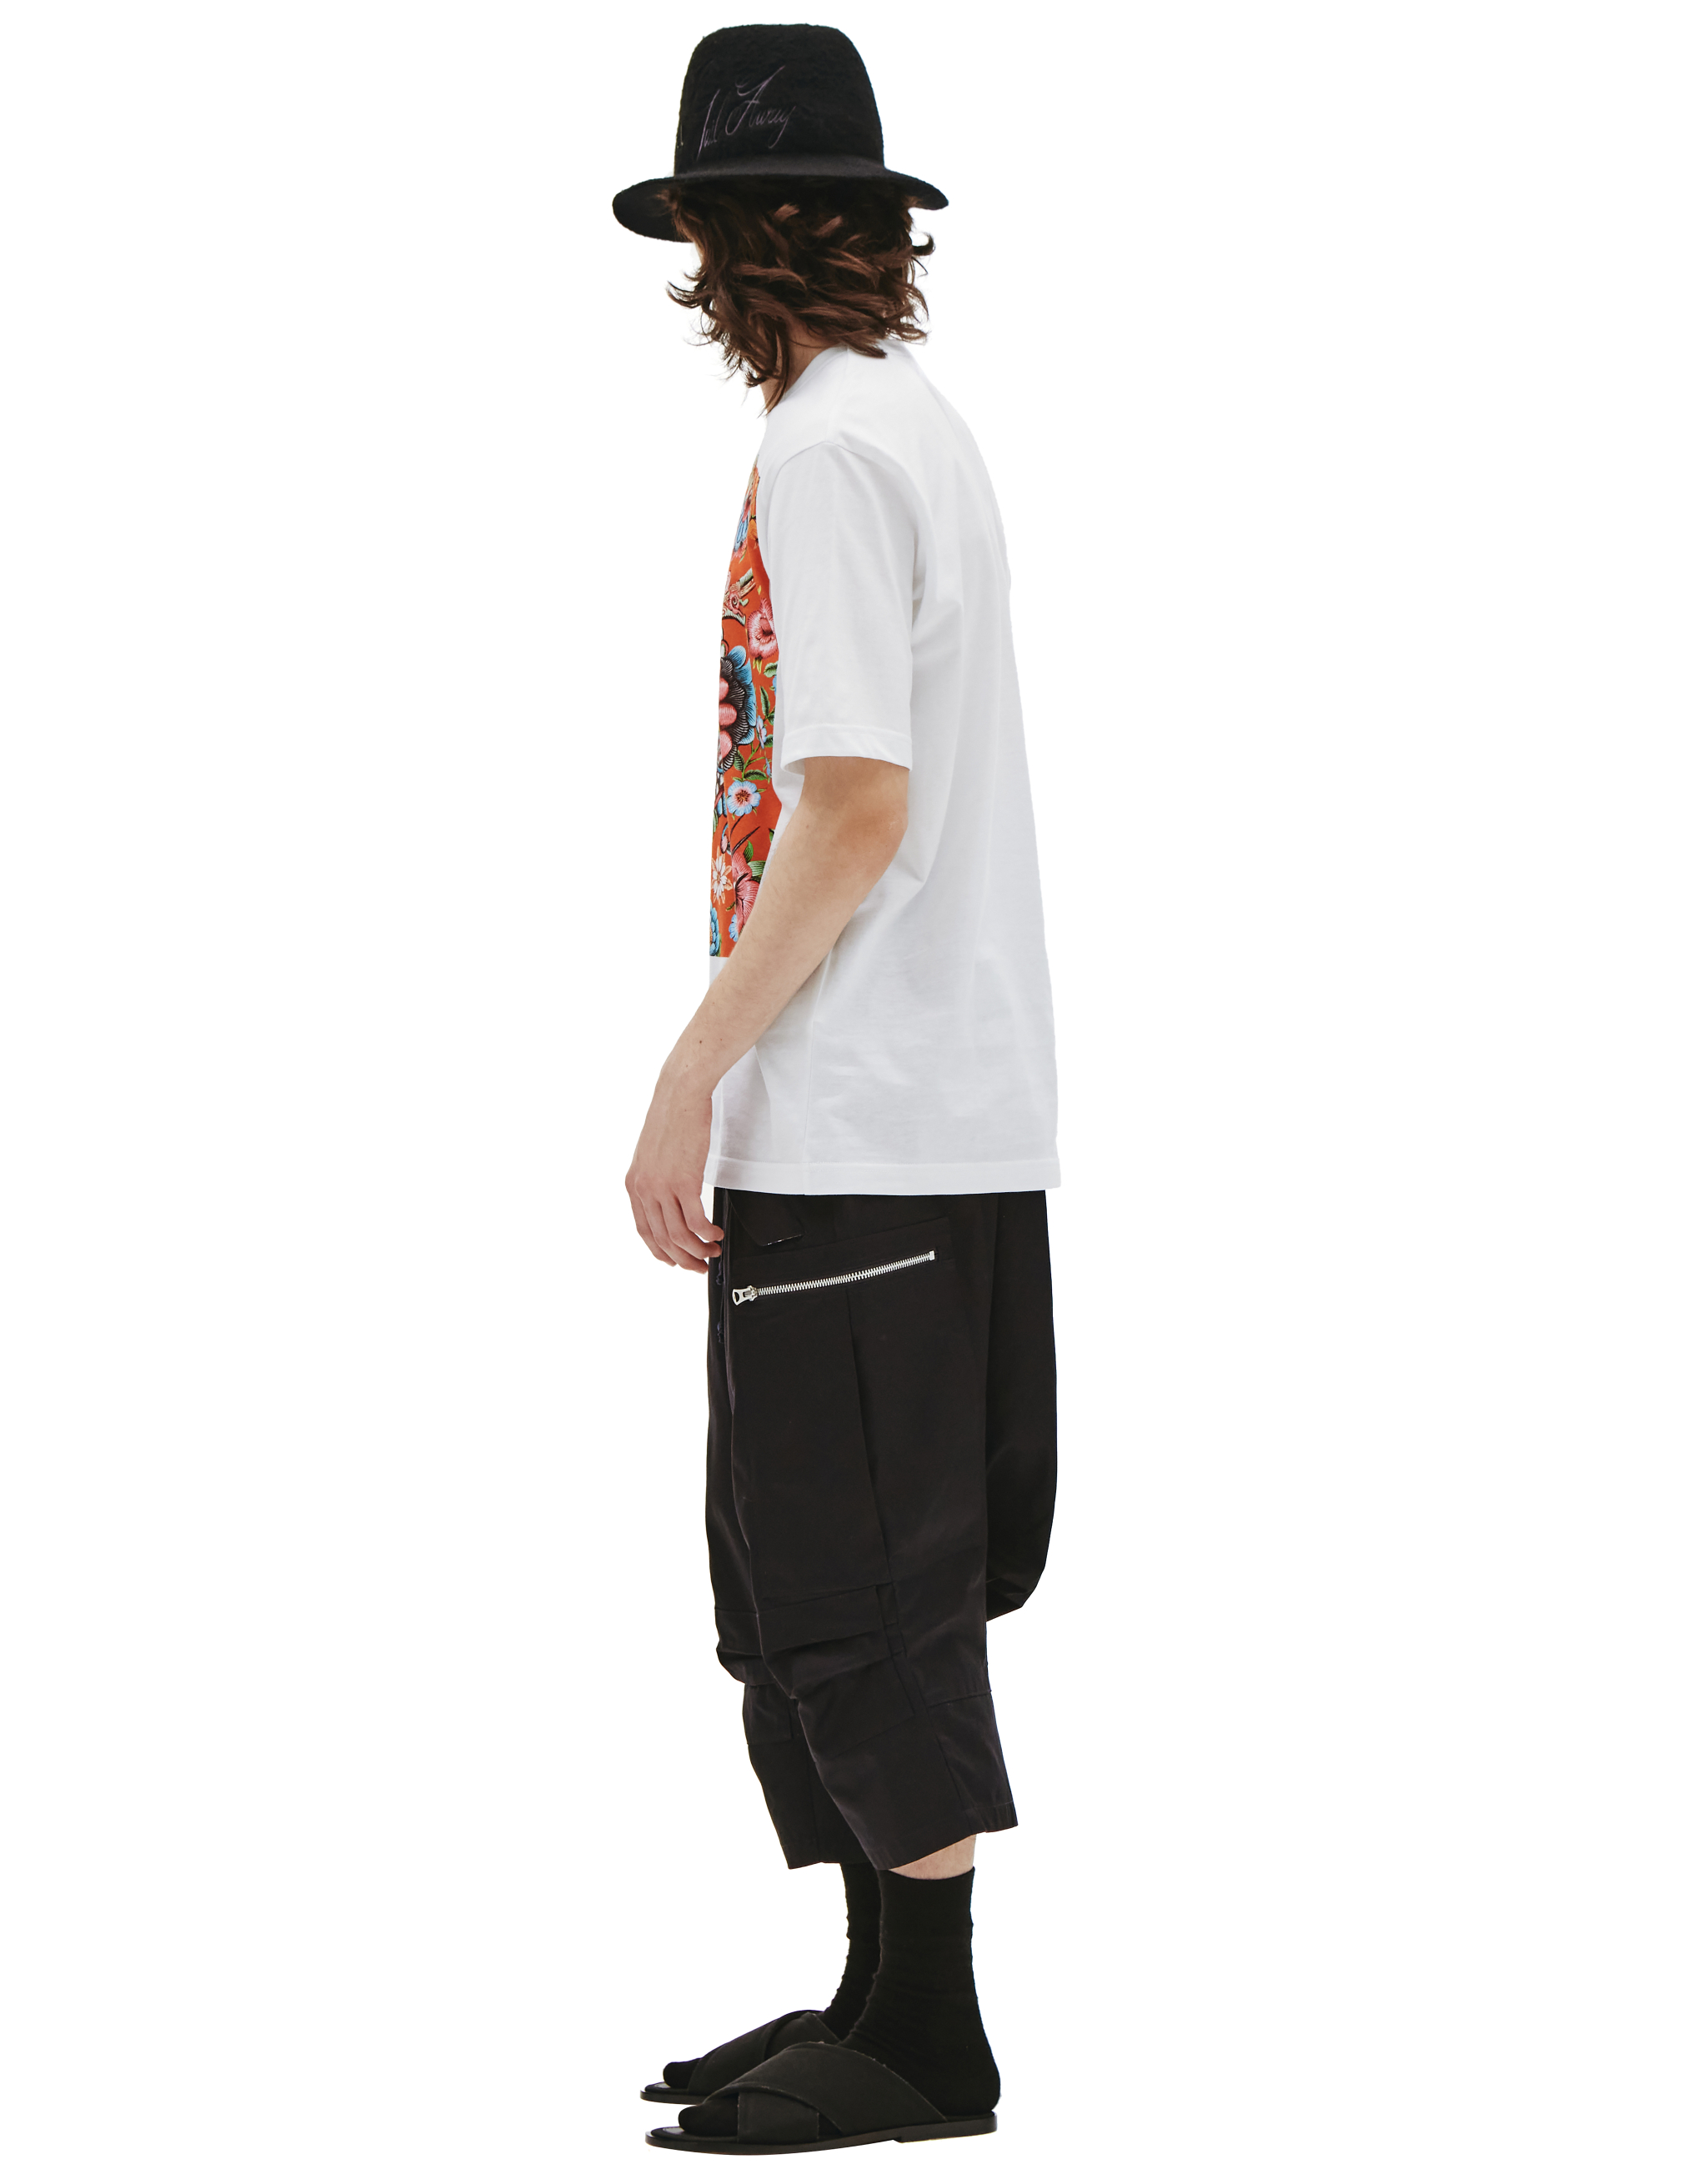 Хлопковая футболка с принтом дракона Junya Watanabe WI-T005-051-1, размер XL;L - фото 2